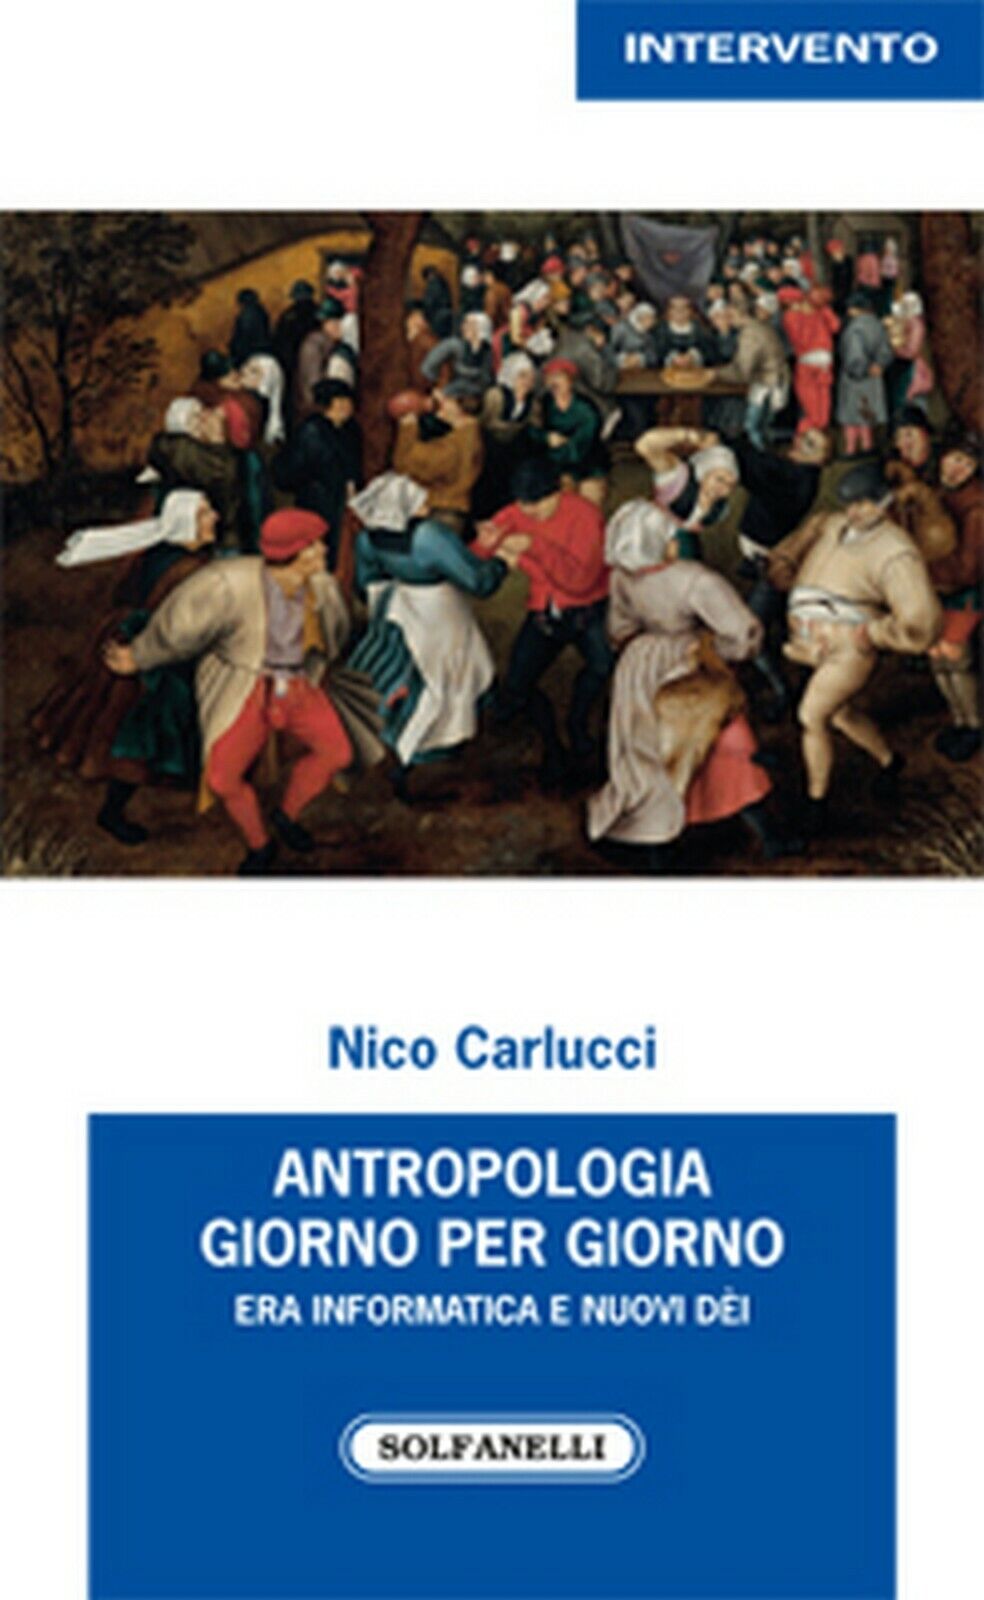 ANTROPOLOGIA GIORNO PER GIORNO  di Nico Carlucci,  Solfanelli Edizioni